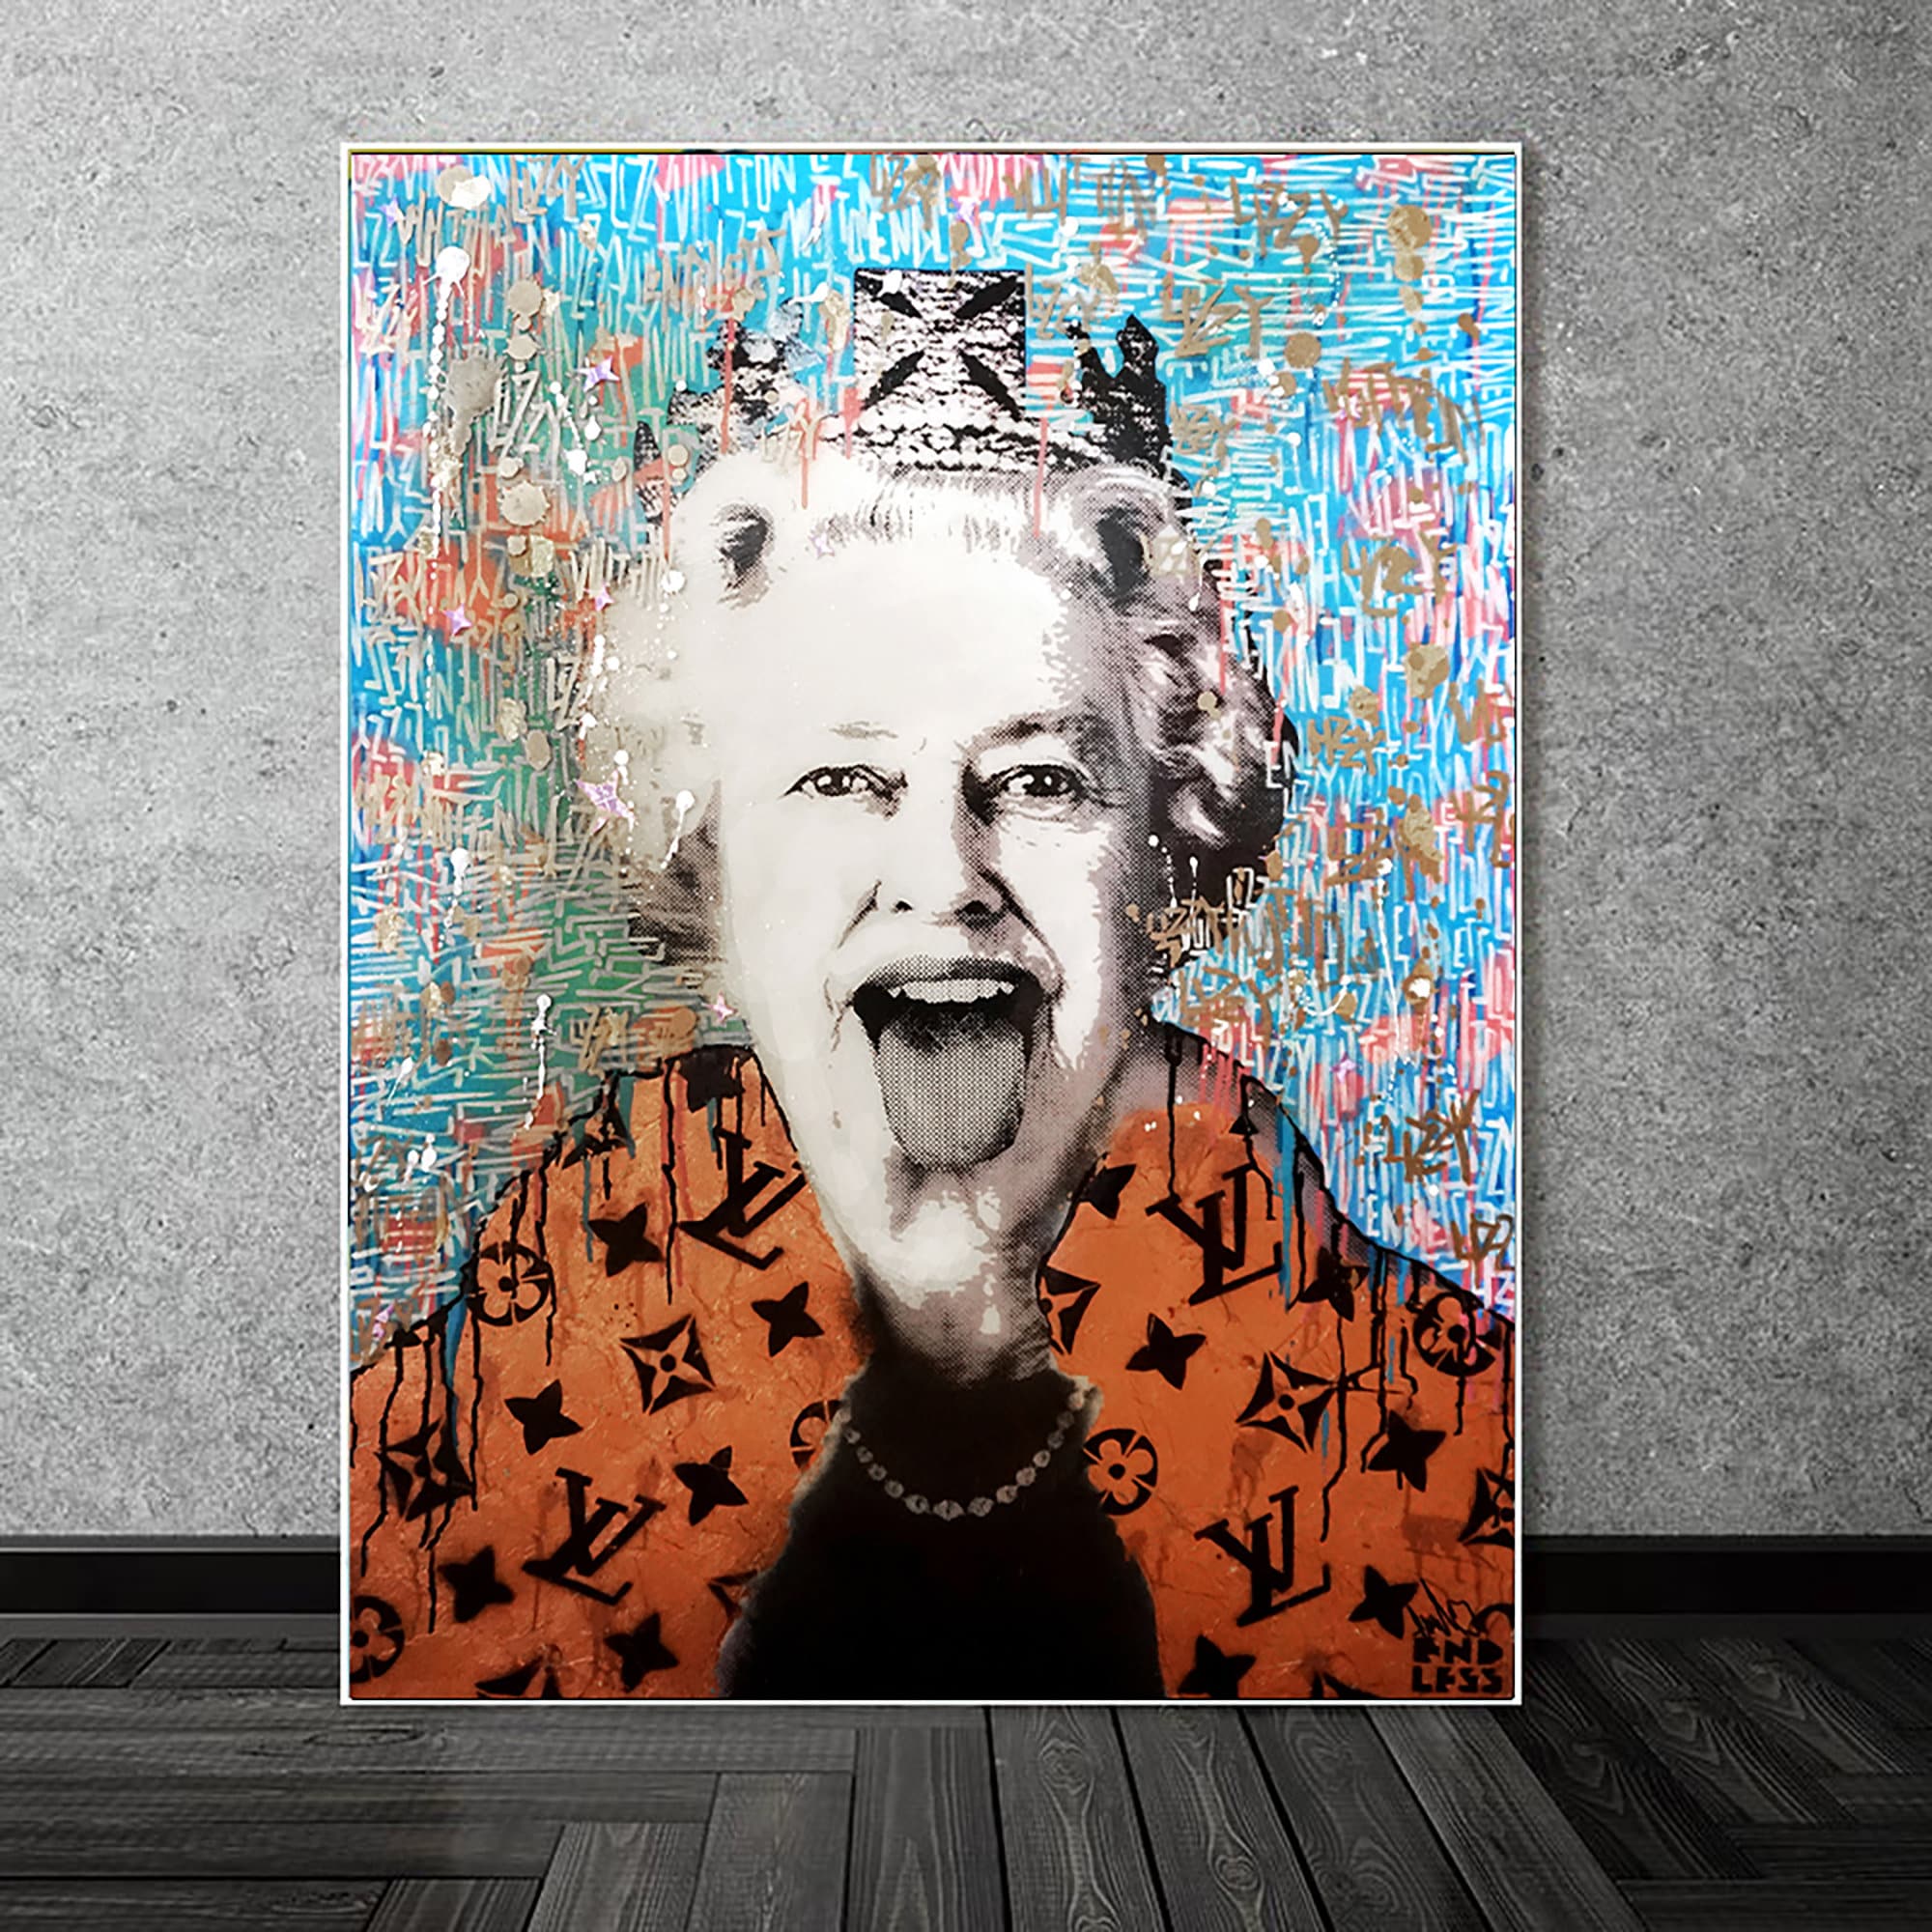 Endless Artist  Happy Birthday Queen Elizabeth Lizzy Vuitton portrait in  the studio officialbirthday lizzyvuitton       louisvuitton  queenportrait punk britart britishpunk punkfashion luxury  highendfashion fashionart 